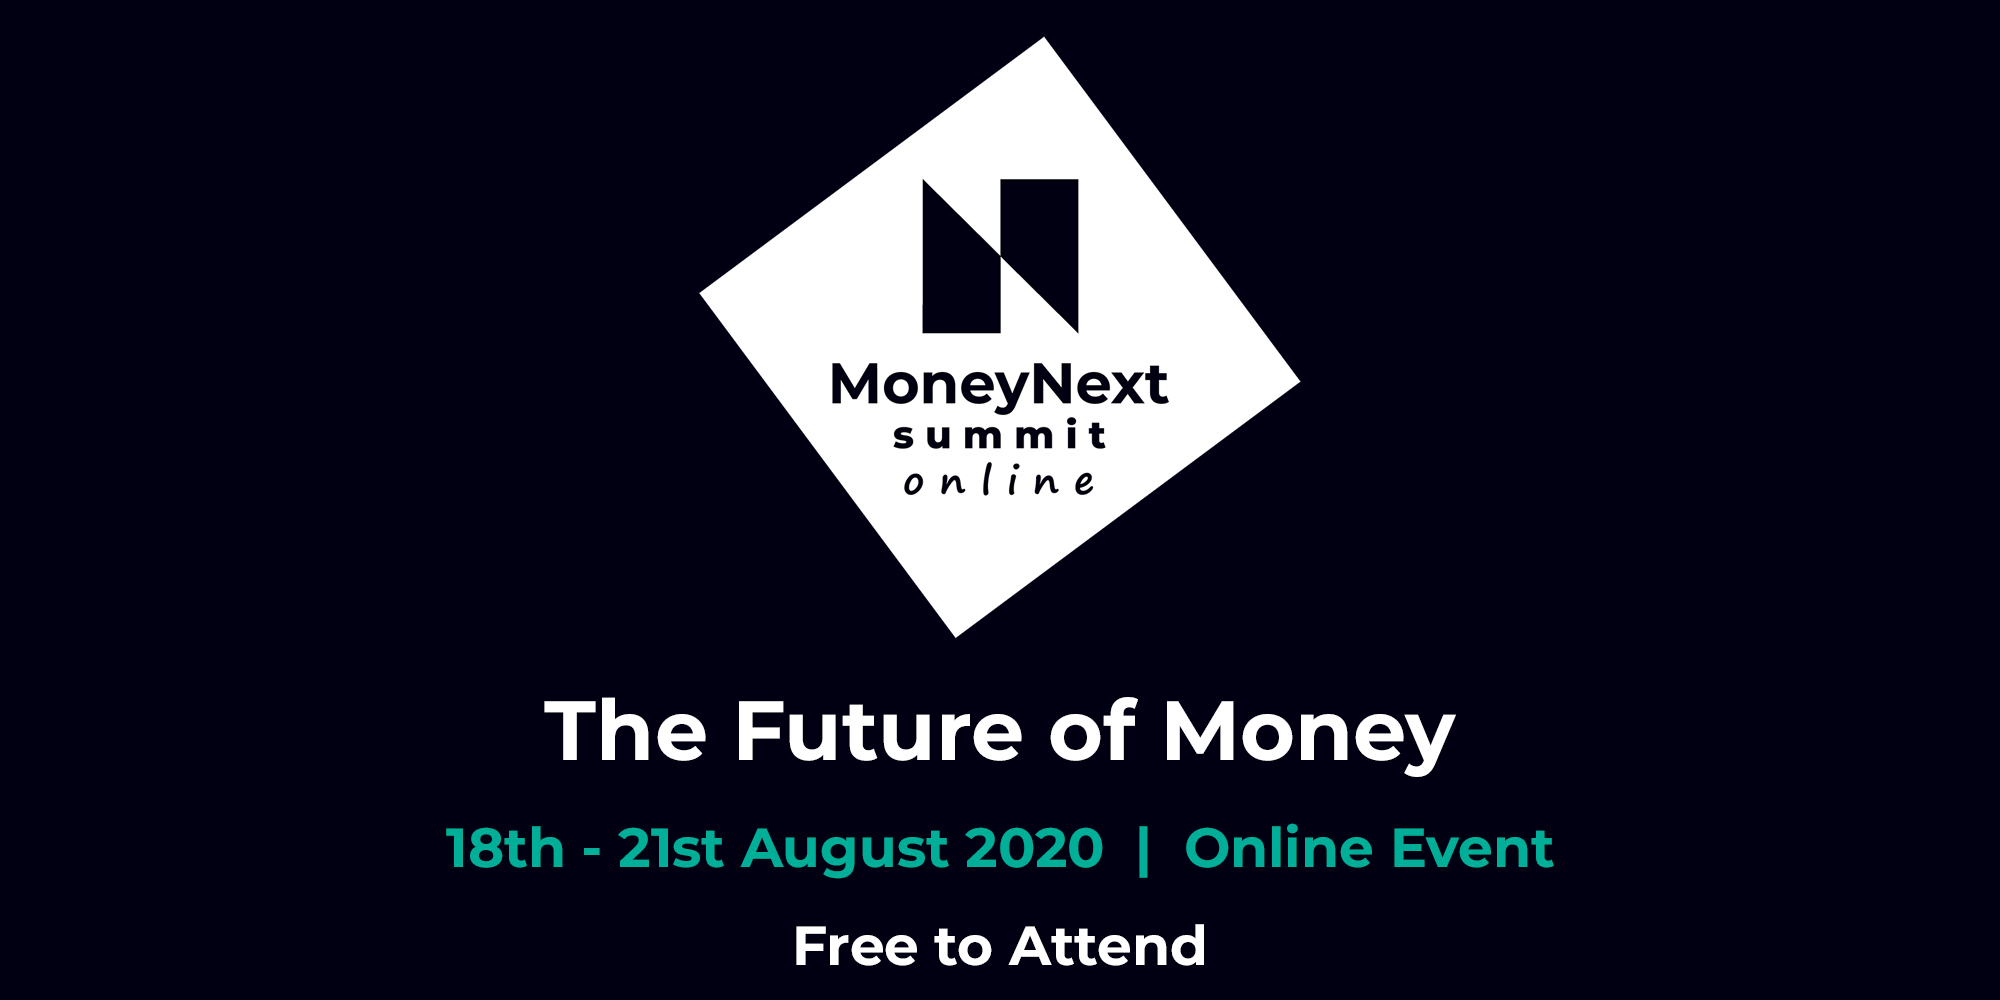 MoneyNext Summit Online 2020